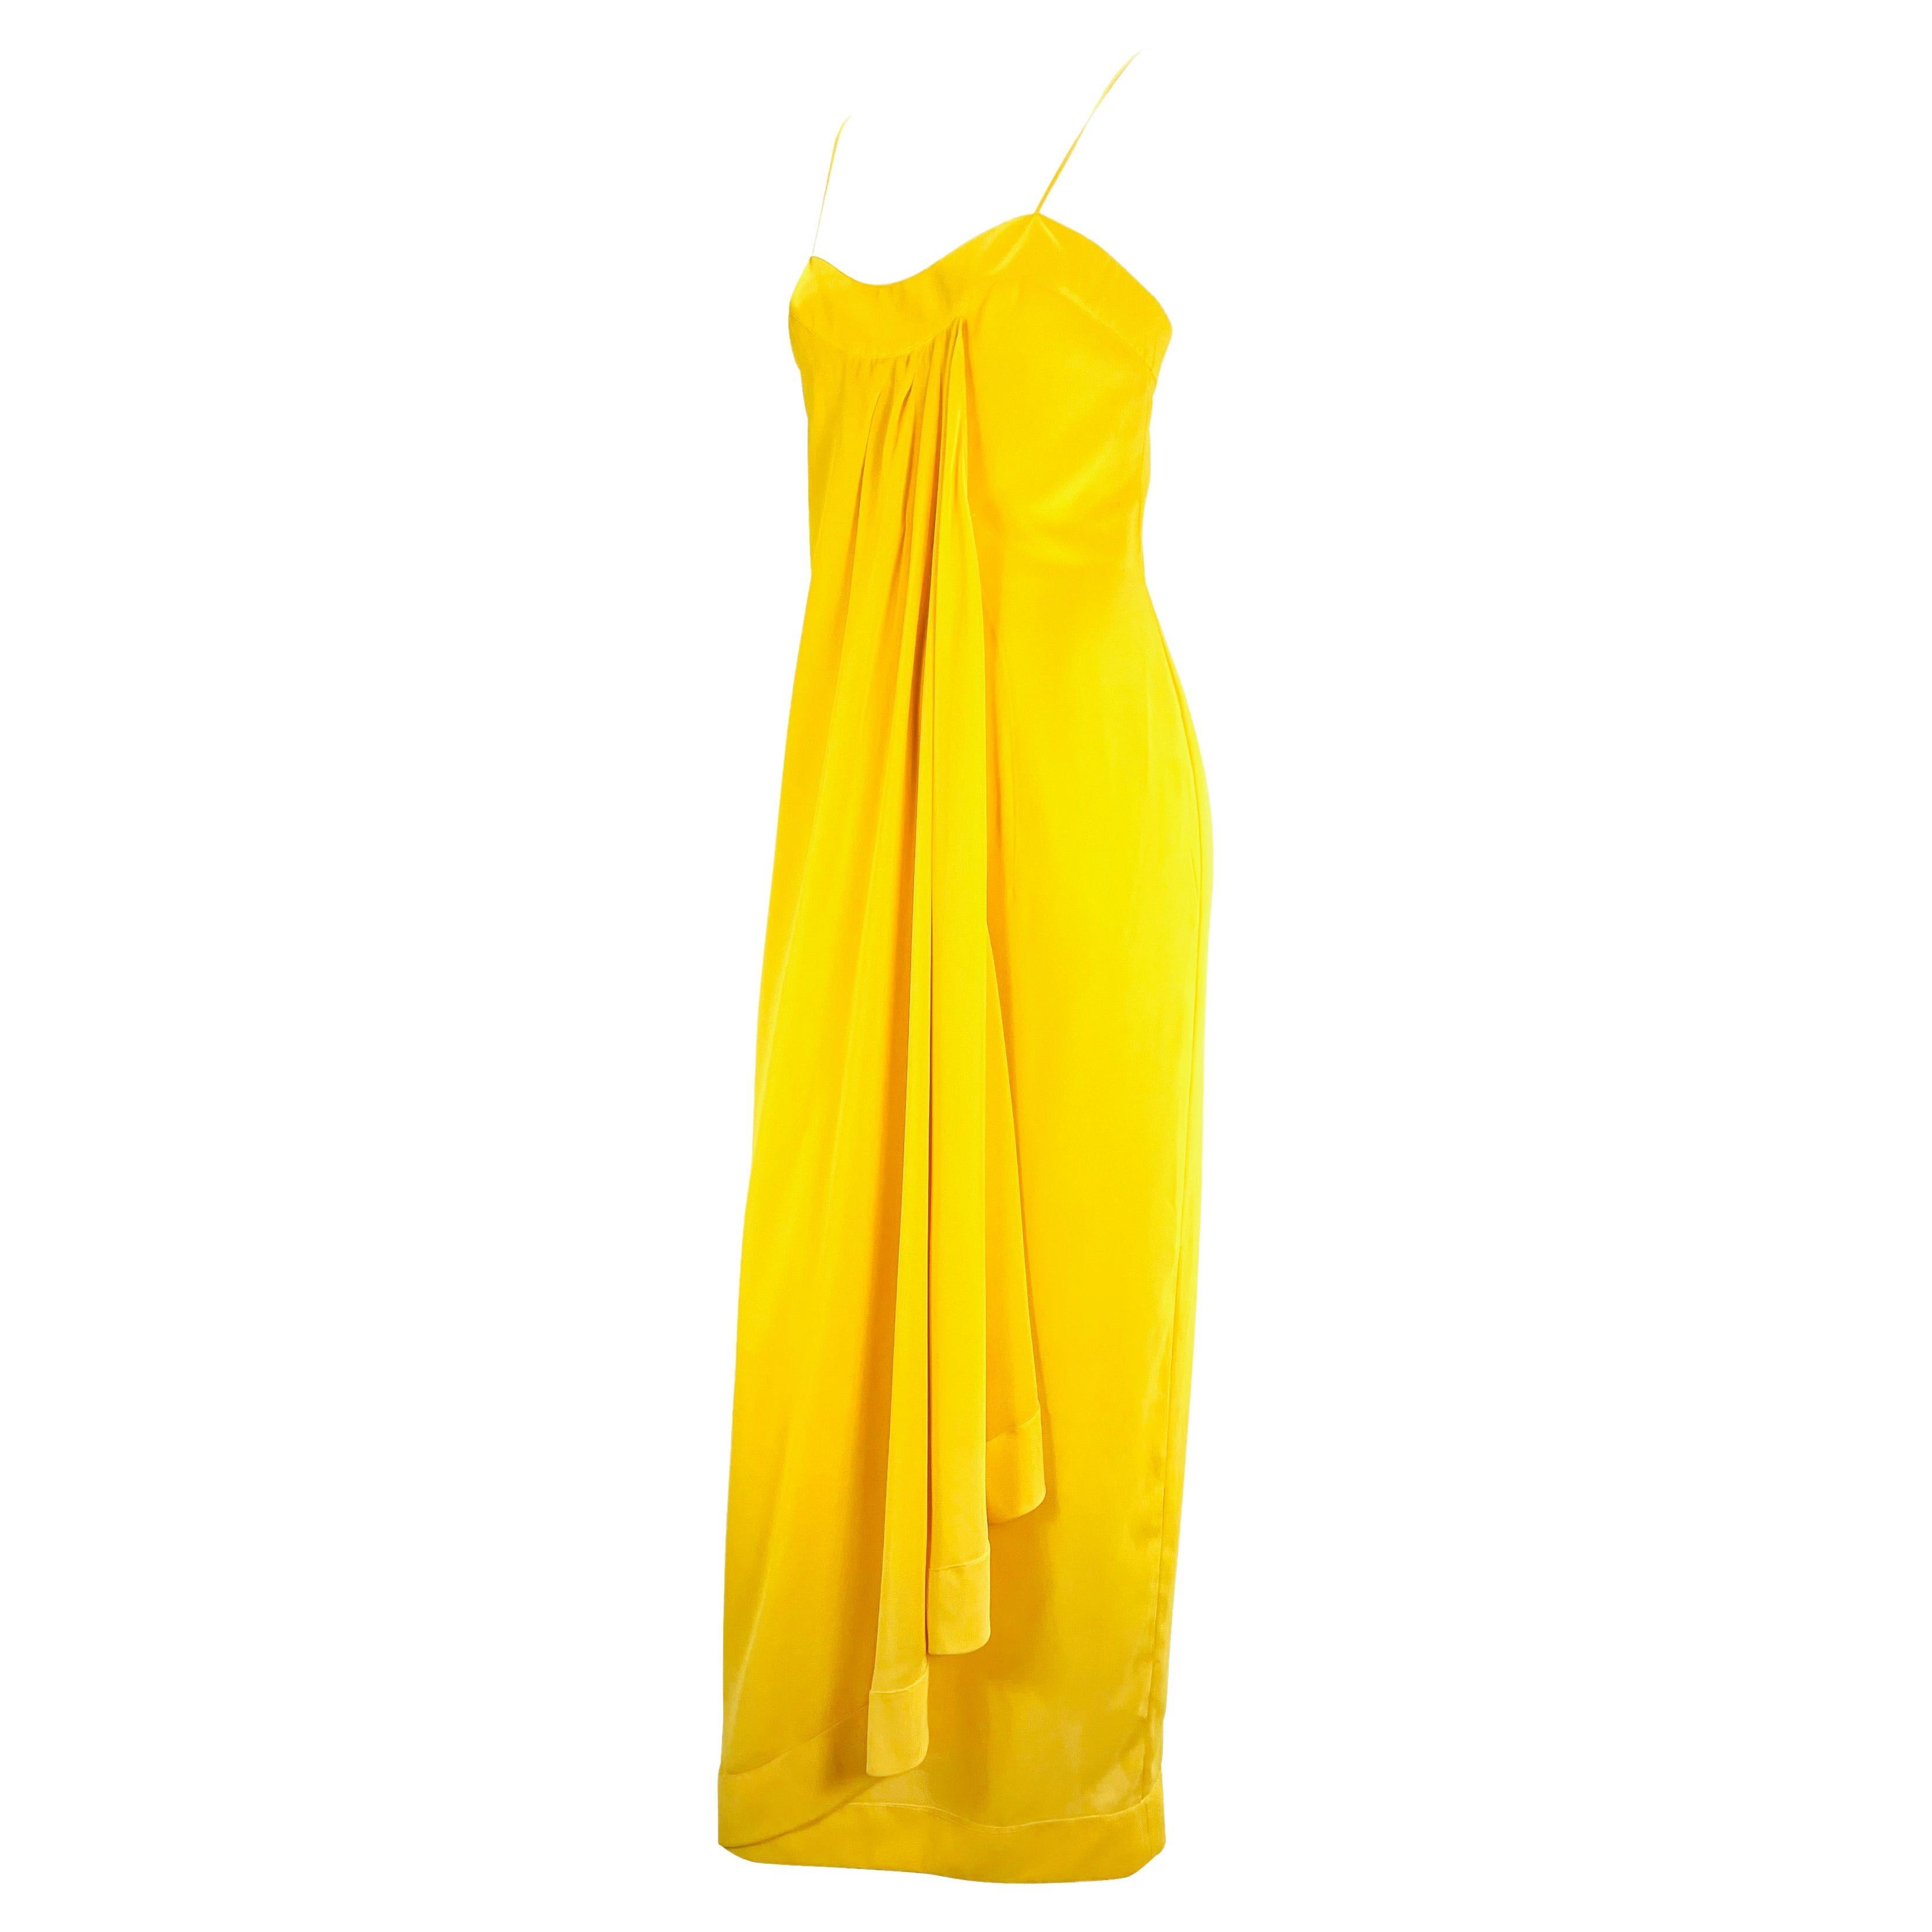 matching shawl for yellow dress